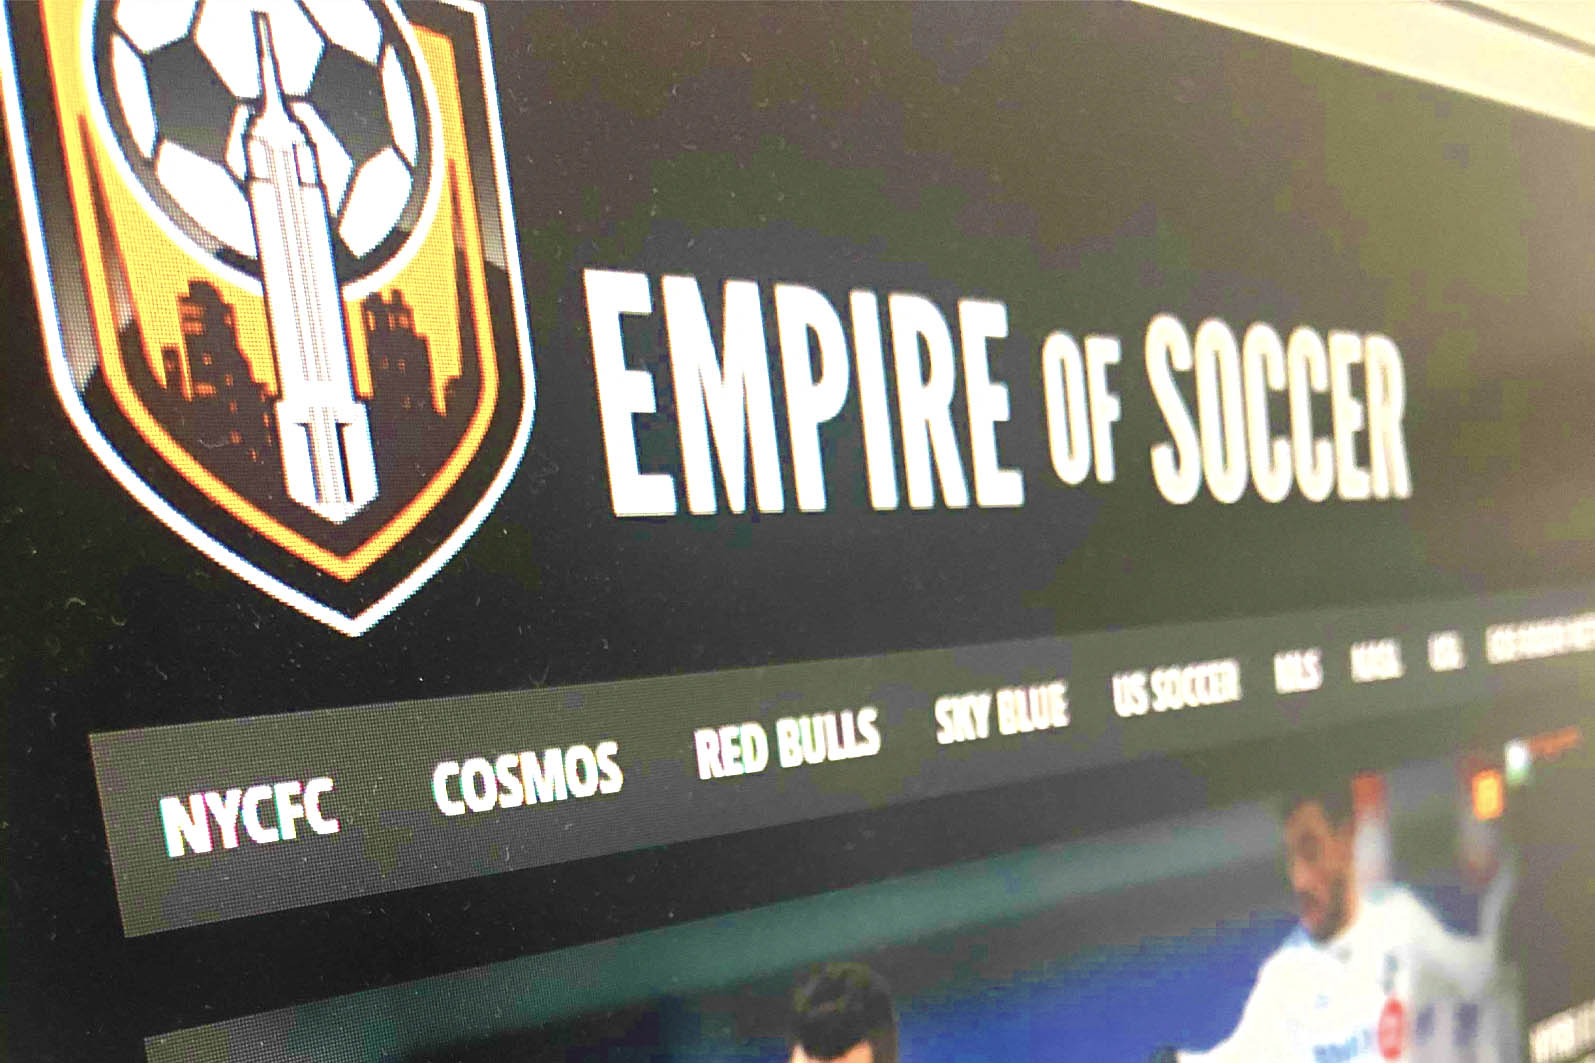 Empire of Soccer header